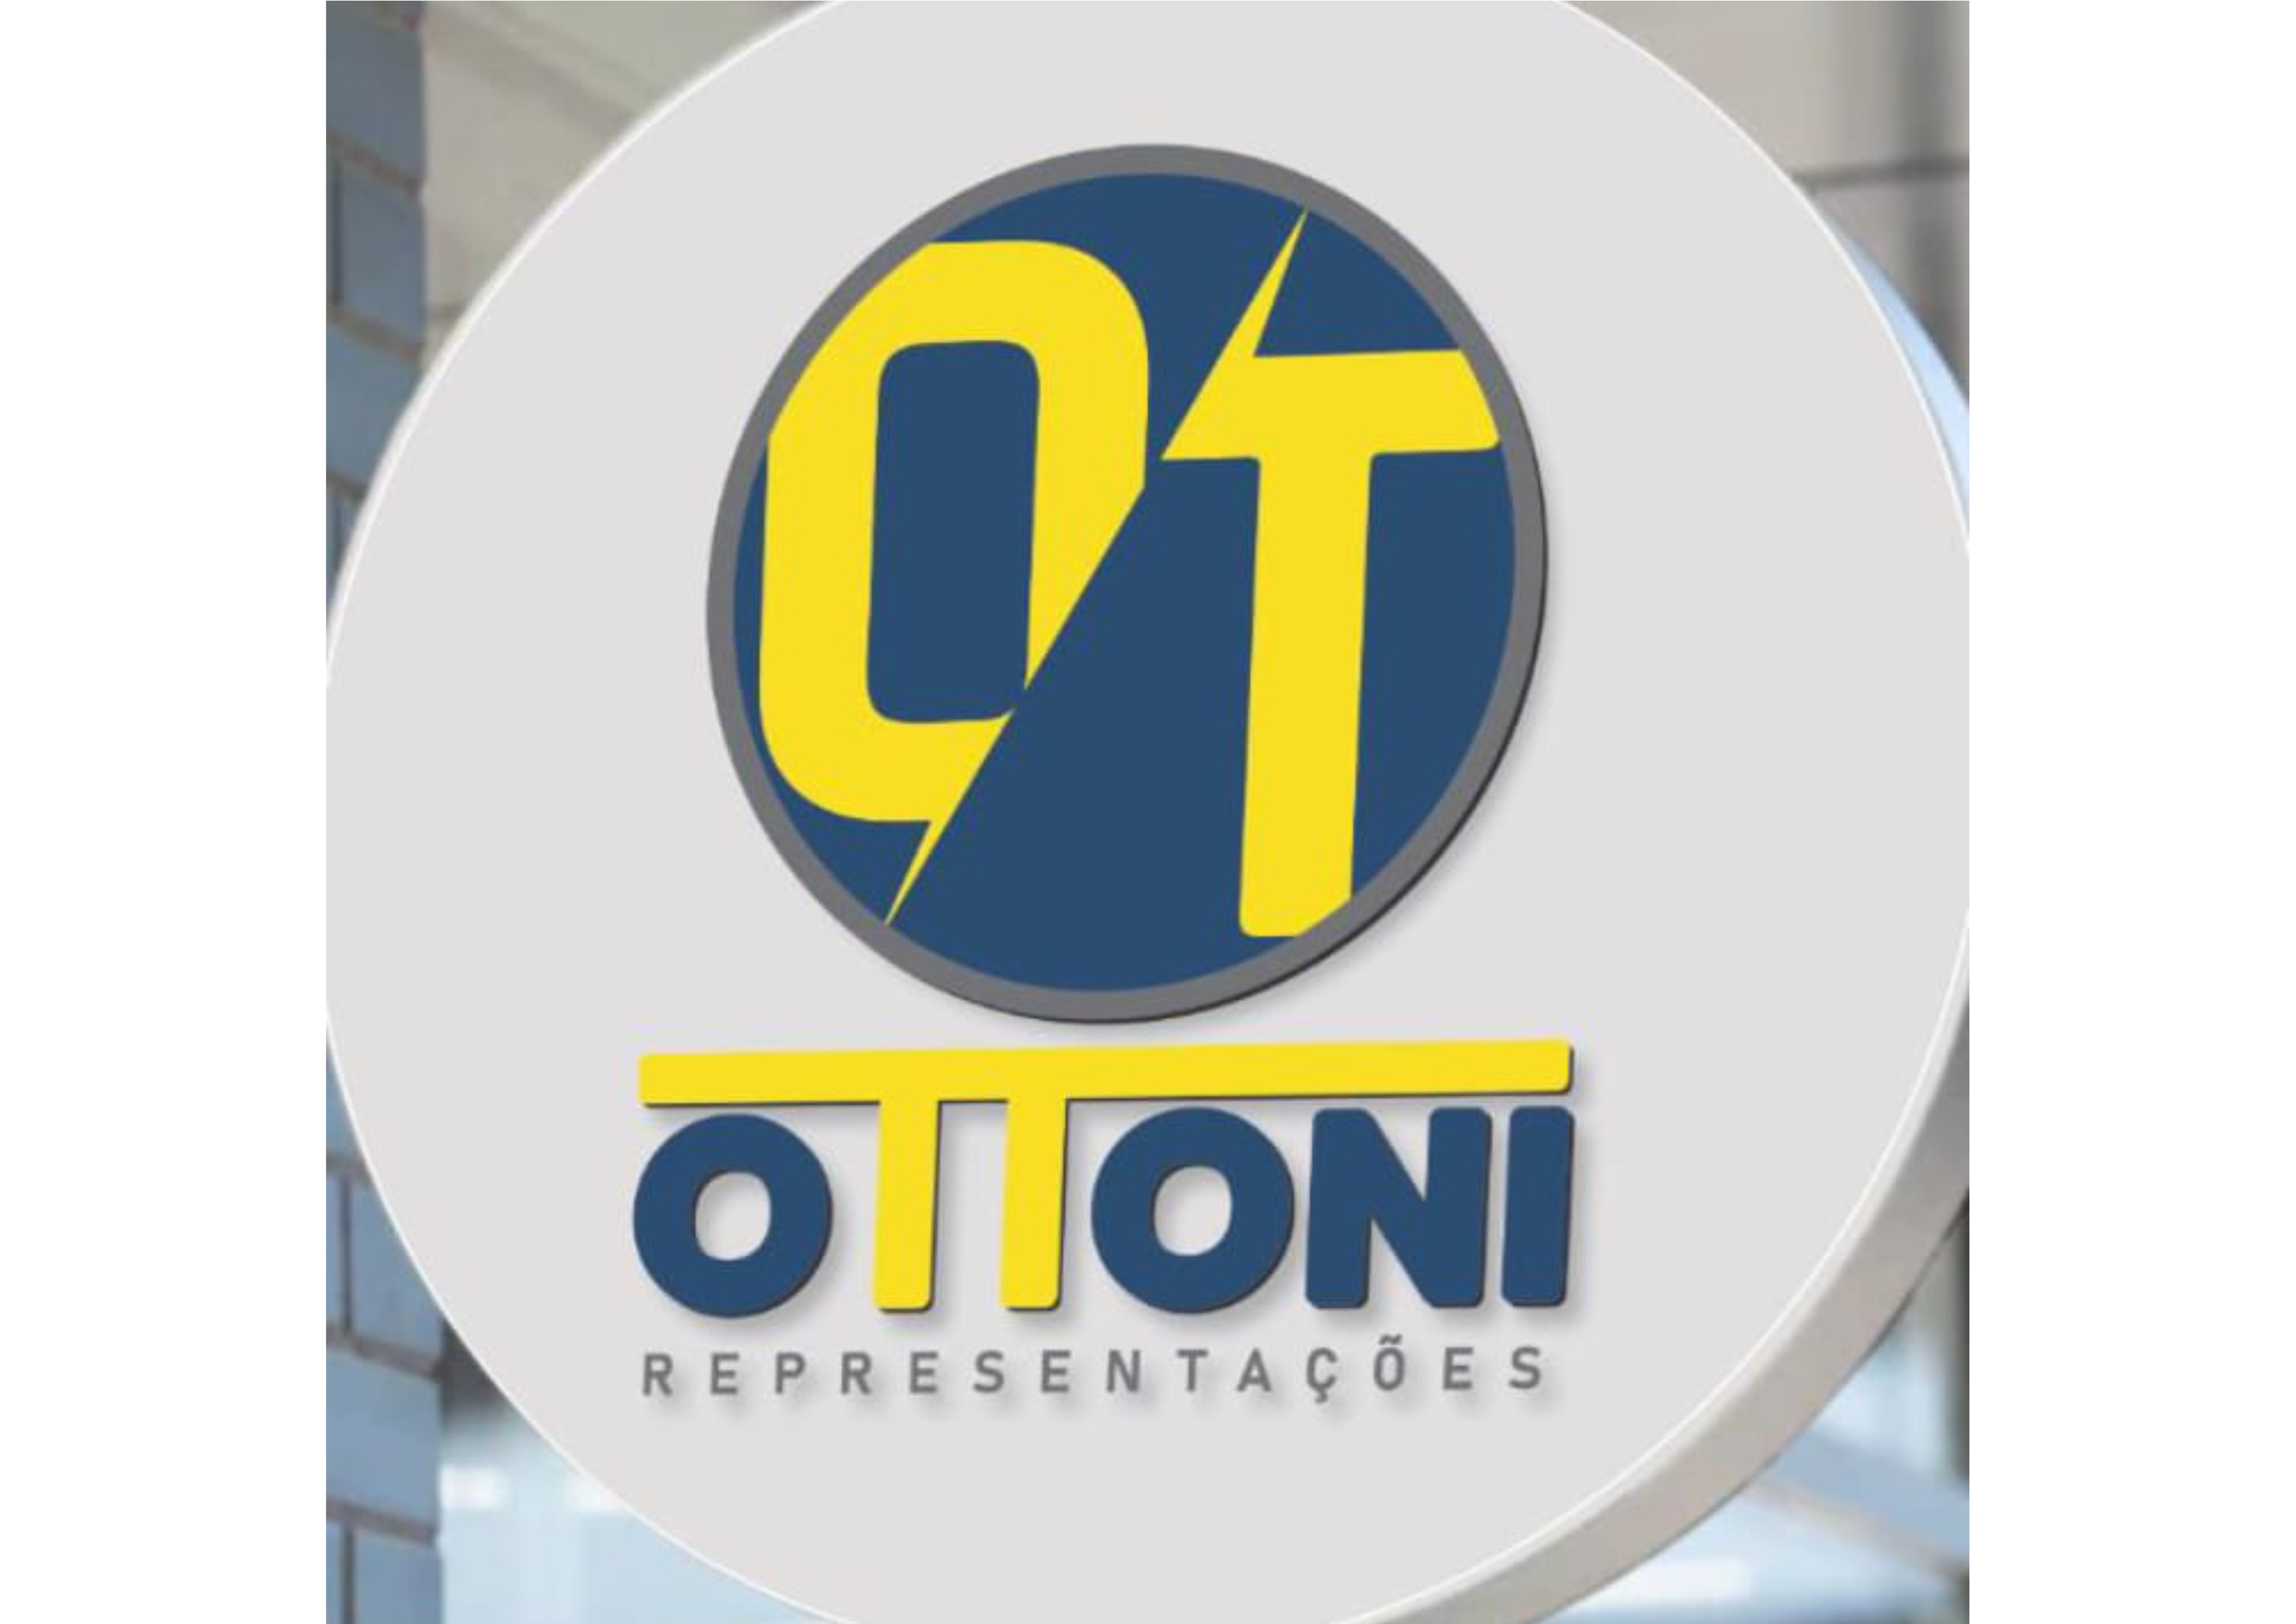 Ottoni Representações